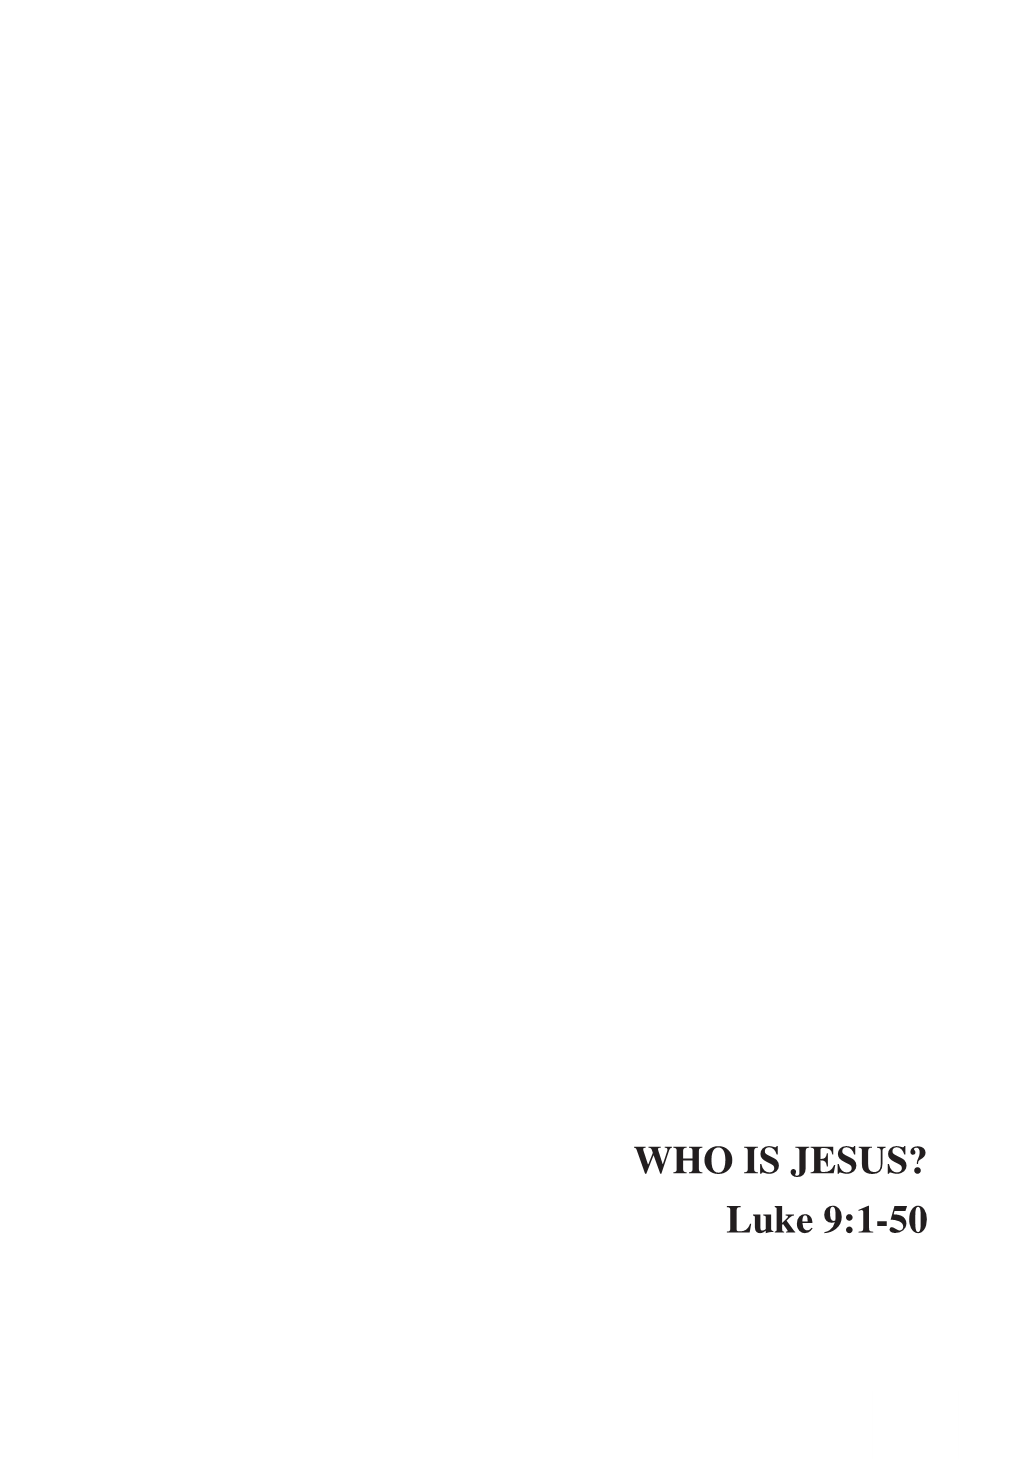 WHO IS JESUS? Luke 9:1-50